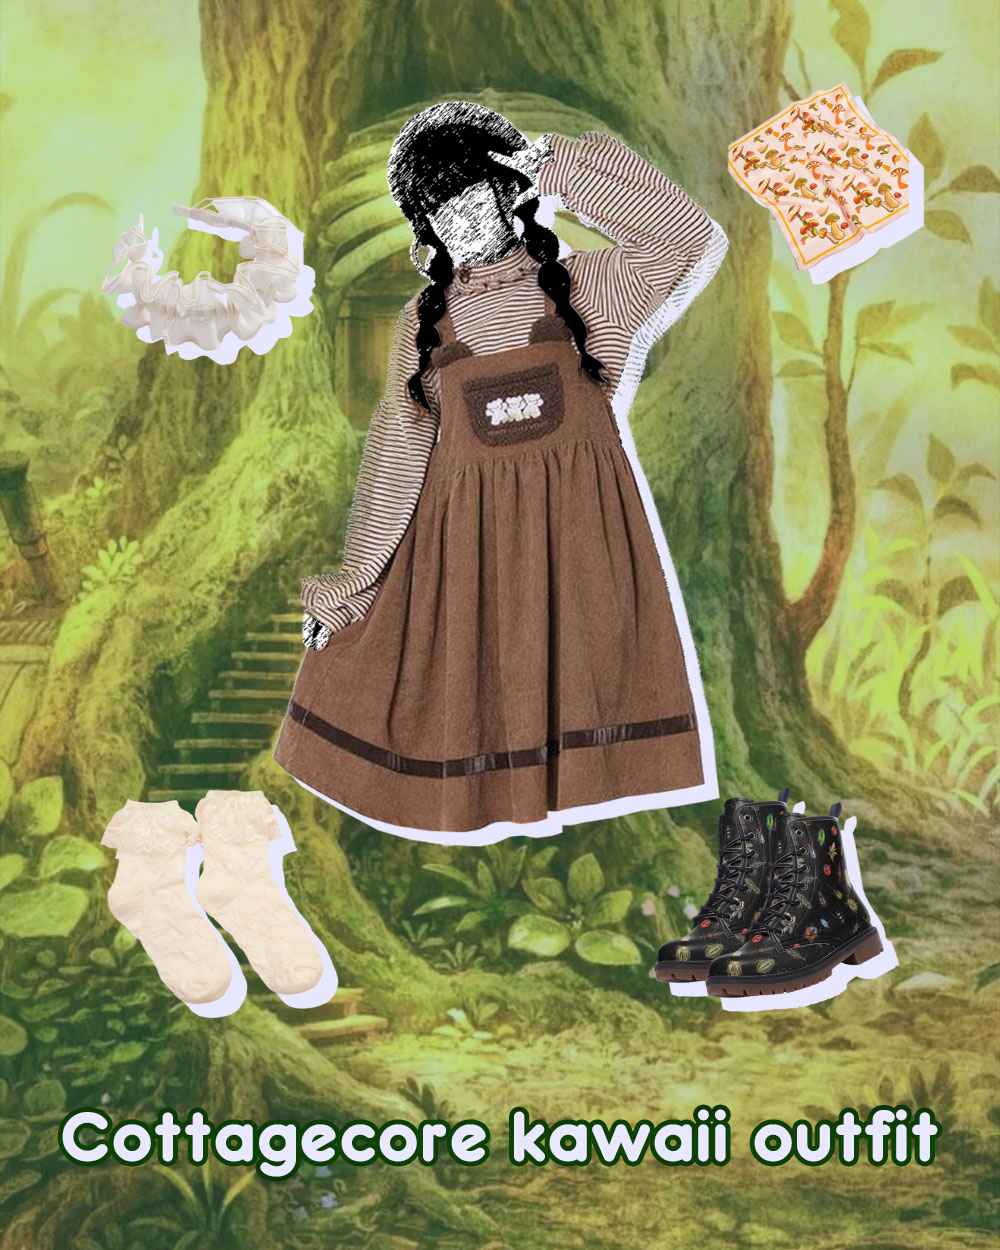 cottagecore kawaii outfit inspiration jumpsuit dress, striped ruffle blouse, ruffle headband, laced socks, lace boots